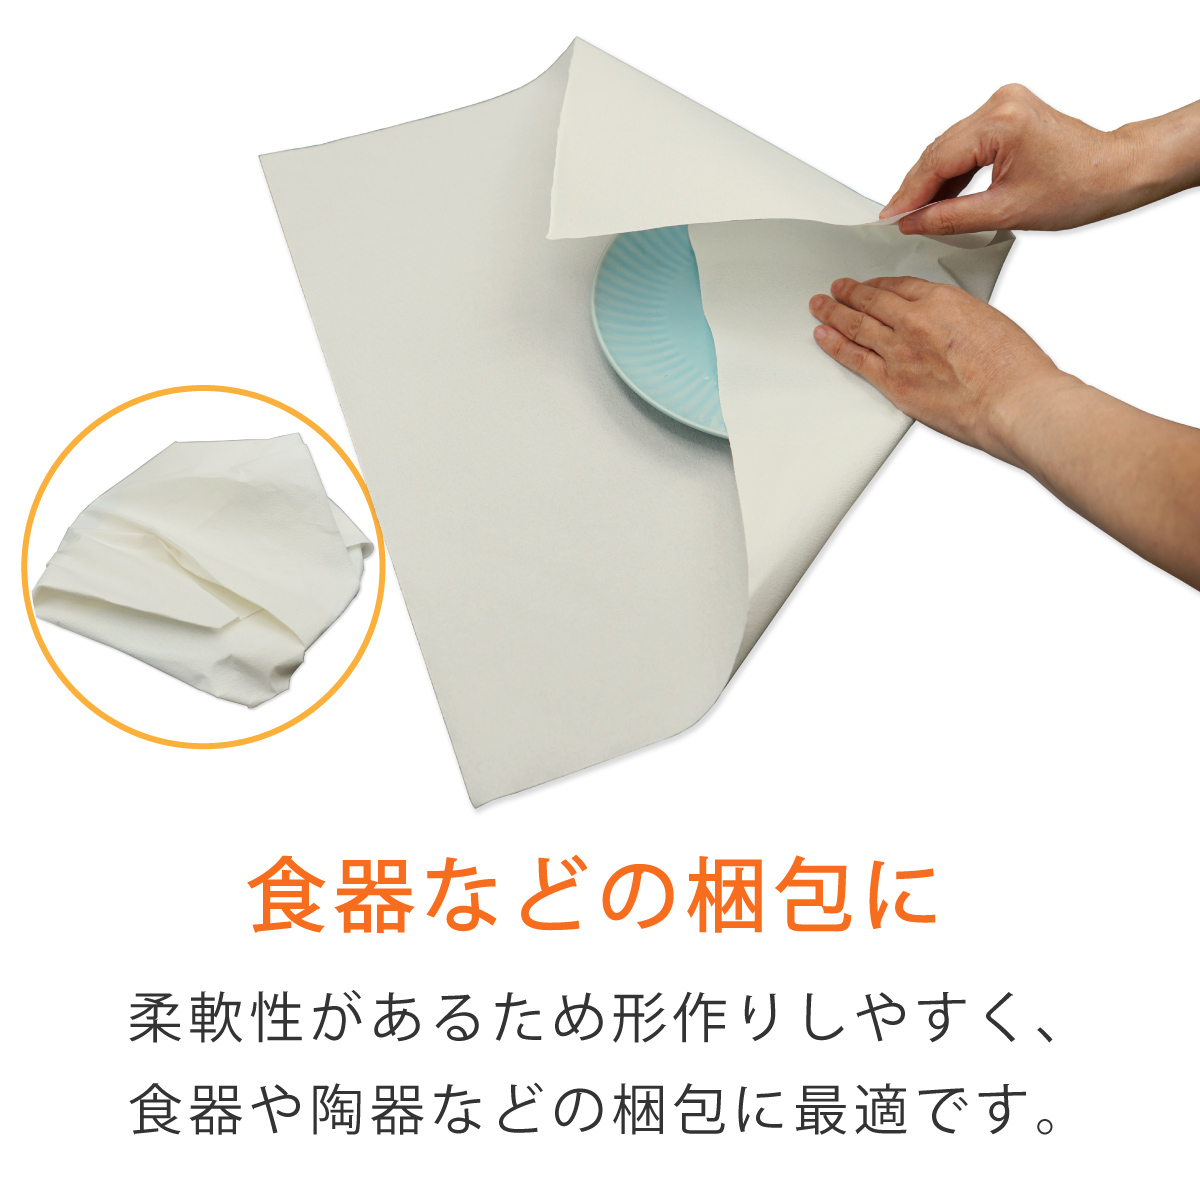  блинчики бумага ( морщина бумага )36g/m2 белый цвет 450×450mm 100 листов 